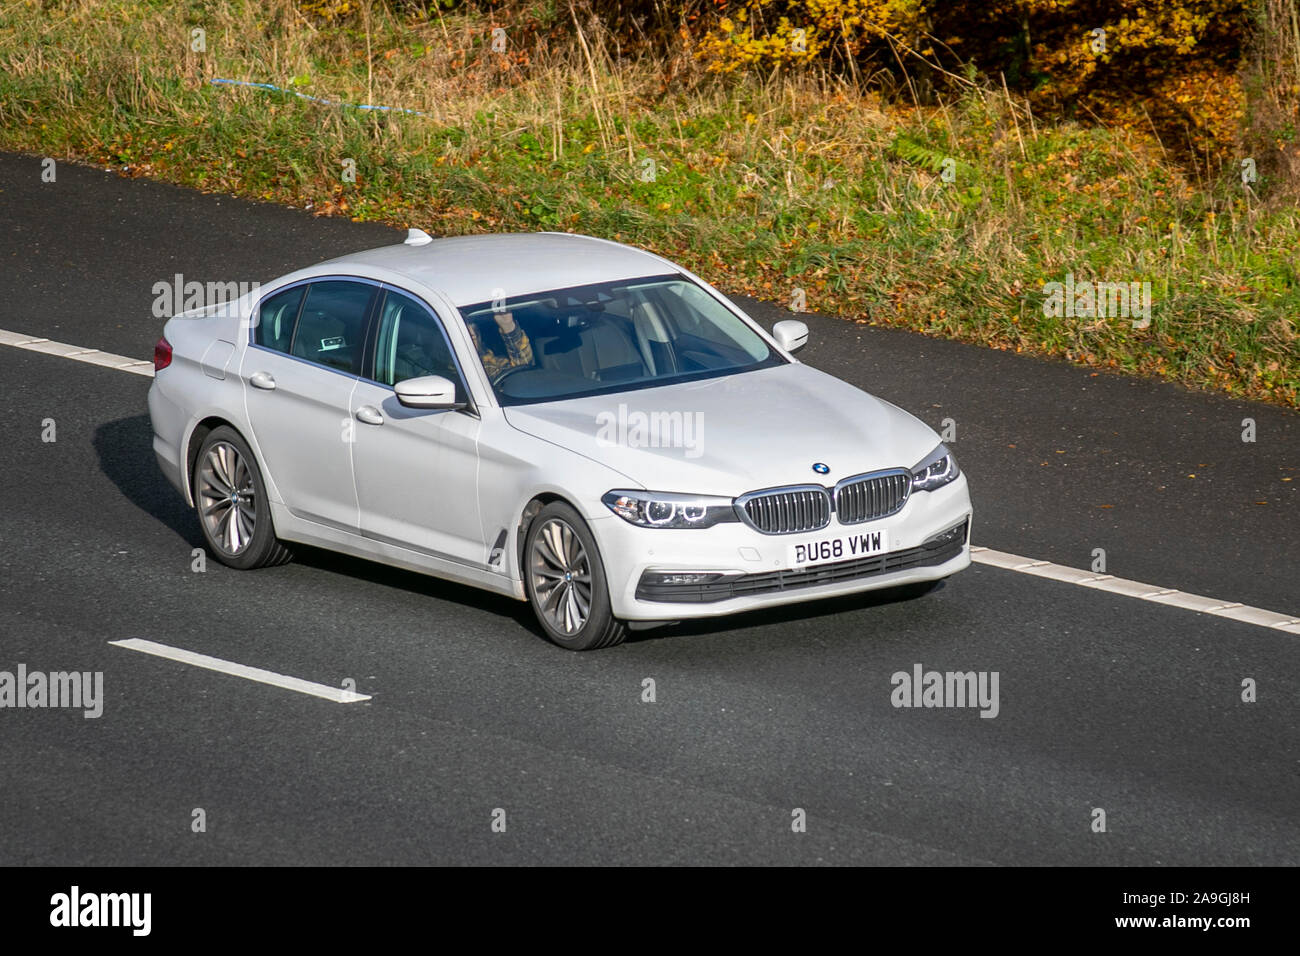 2018 weißen BMW 520D Xdrive SE Auto; Großbritannien Verkehr, Transport, moderne Fahrzeuge, Limousinen, Süd - Auf der 3 Spur M61 Autobahn Autobahn gebunden. Stockfoto